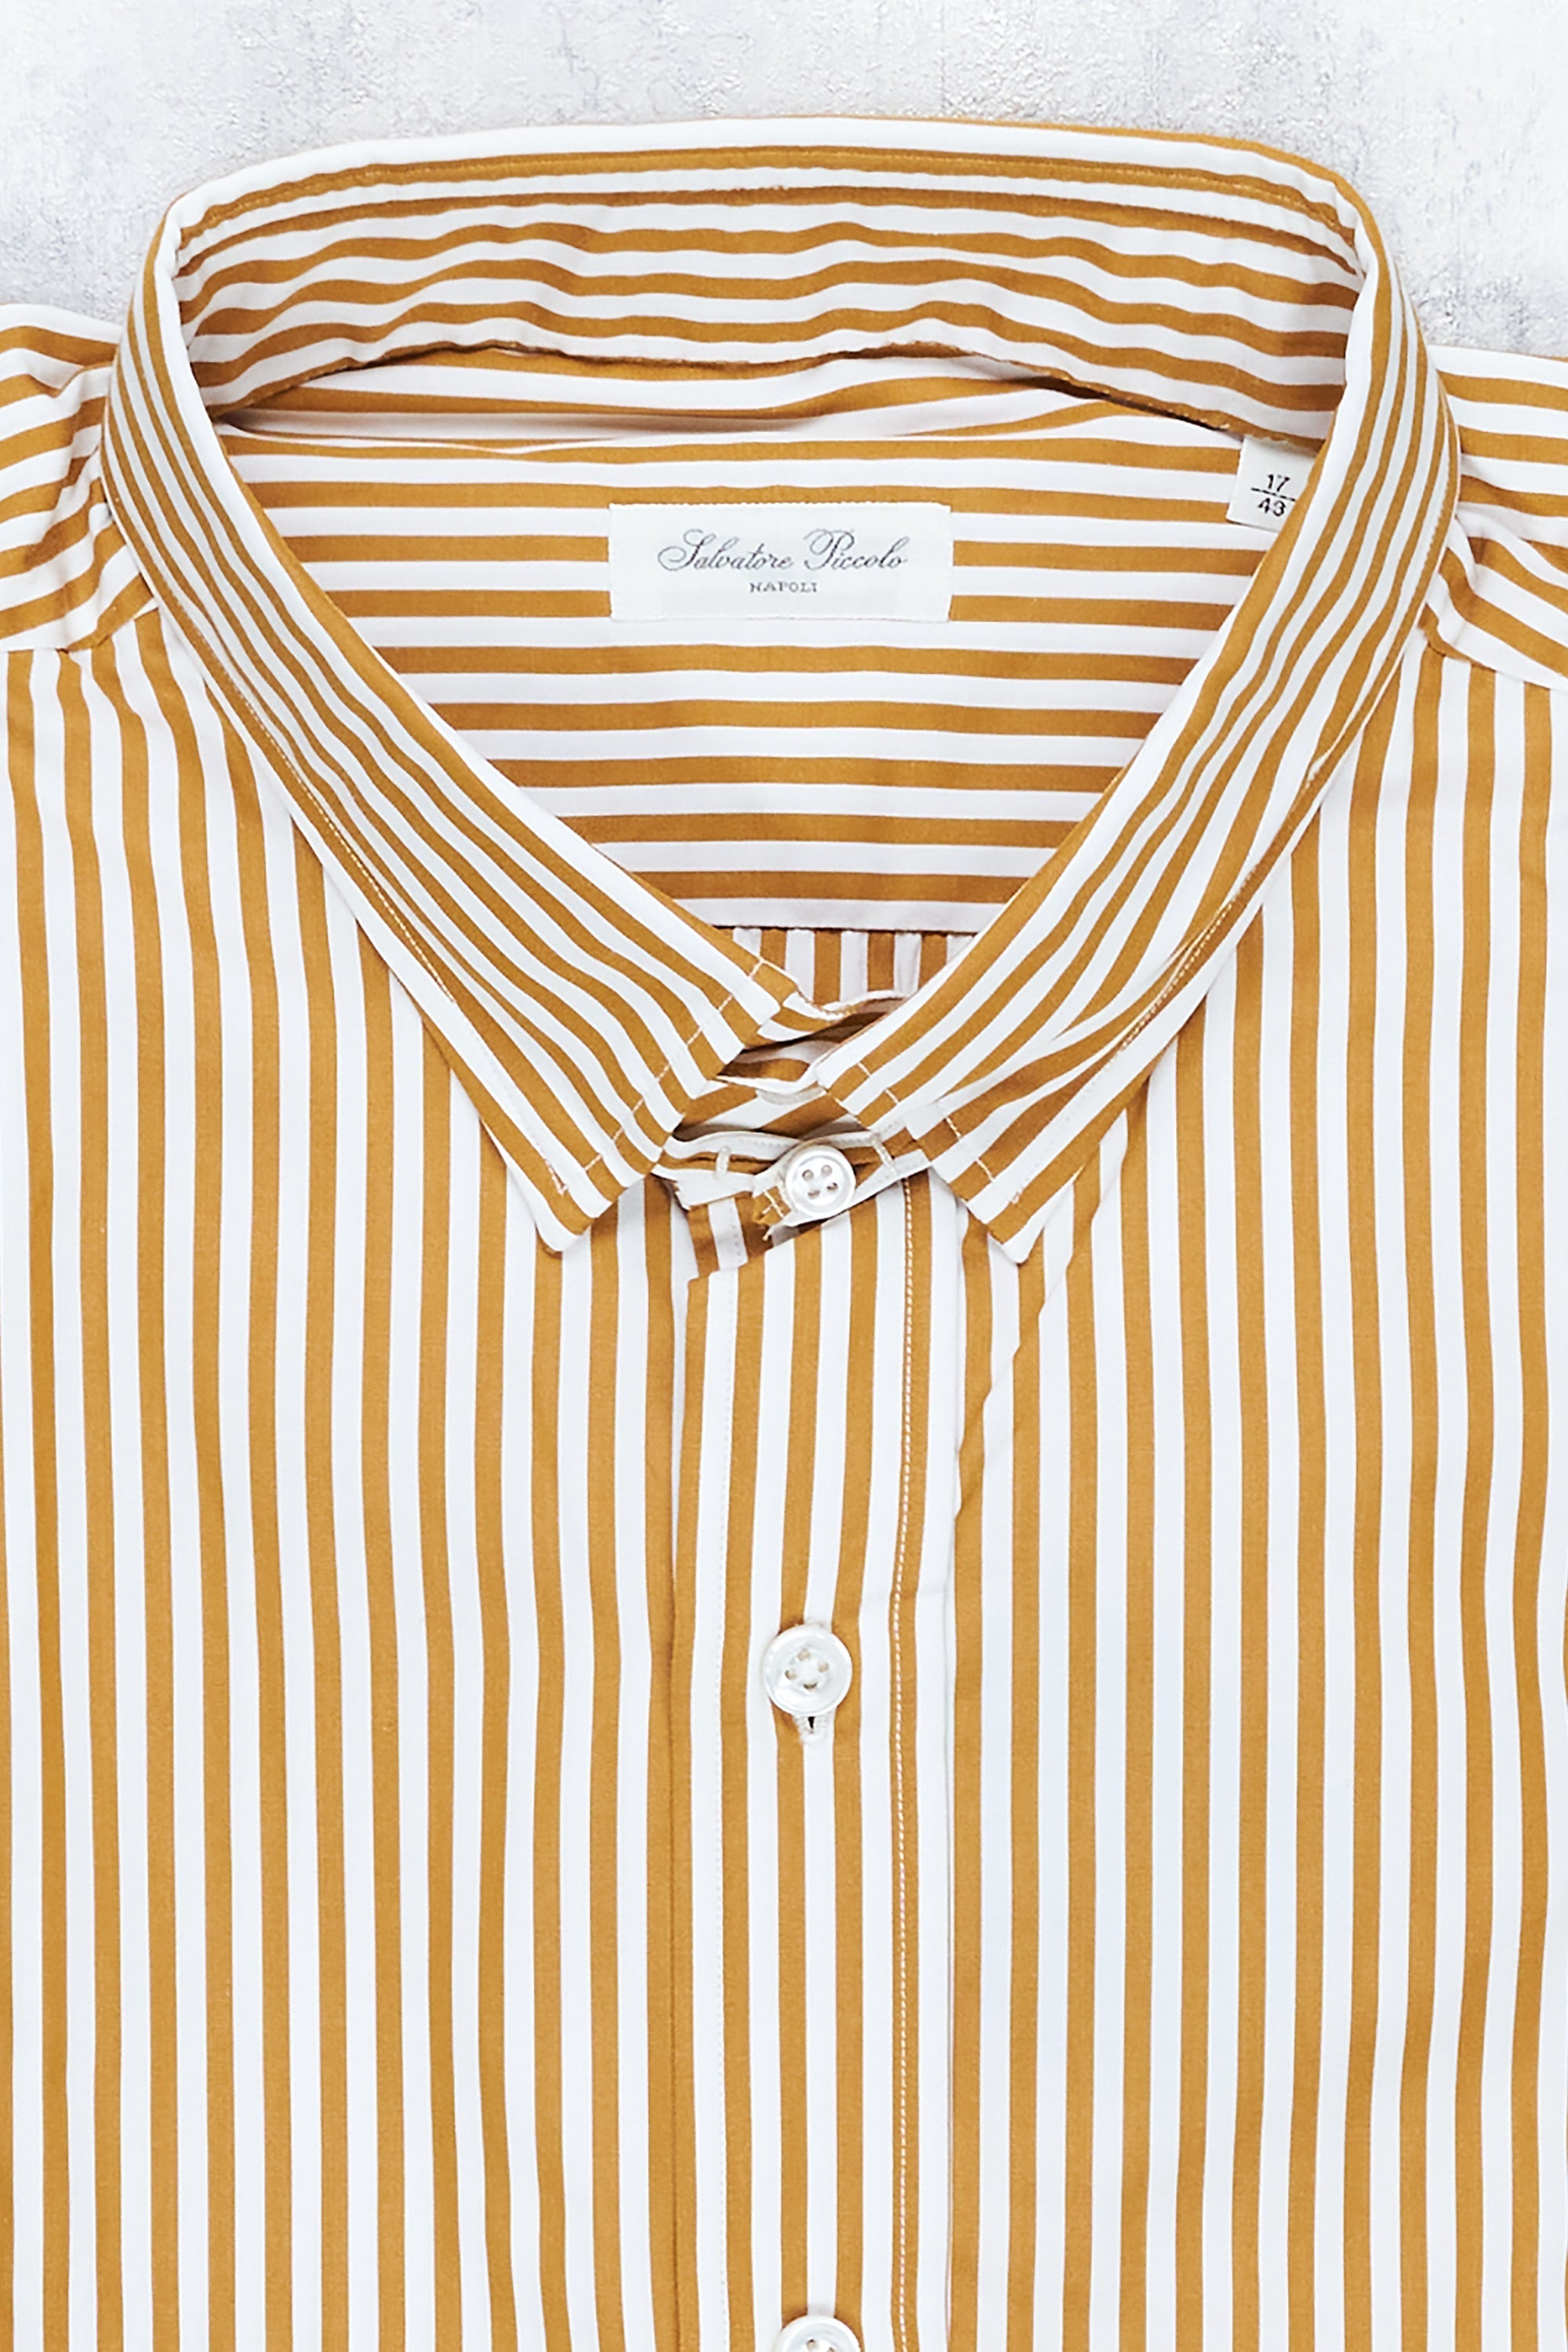 Salvatore Piccolo Mustard/White Stripe Cotton Spread Collar Shirt